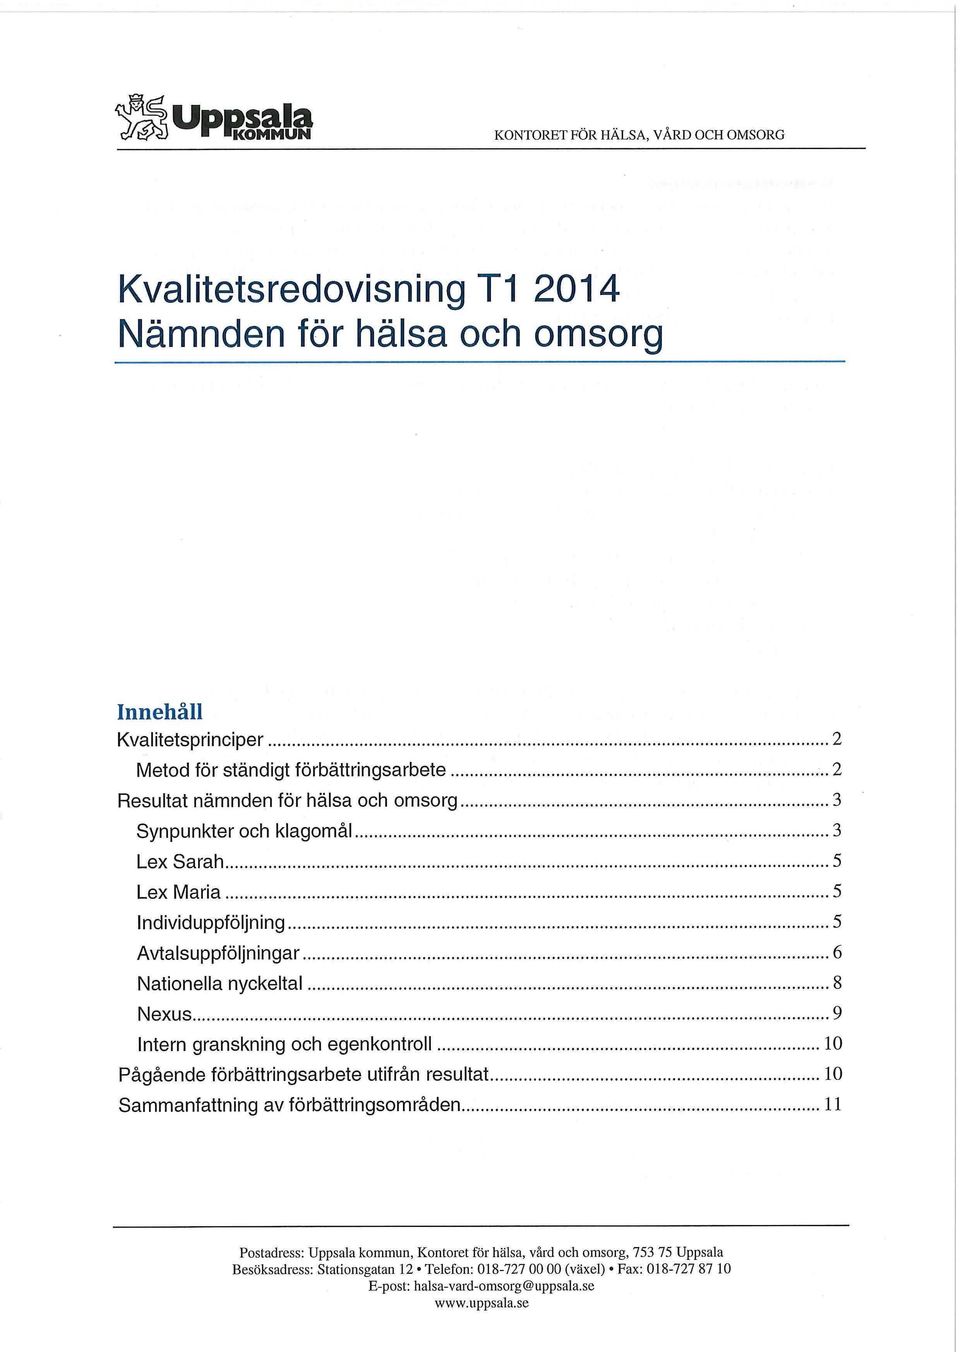 nyckeltal 8 Nexus 9 Intern granskning och egenkontroll 10 Pågående förbättringsarbete utifrån resultat 10 Sammanfattning av förbättringsområden 11 Postadress: Uppsala